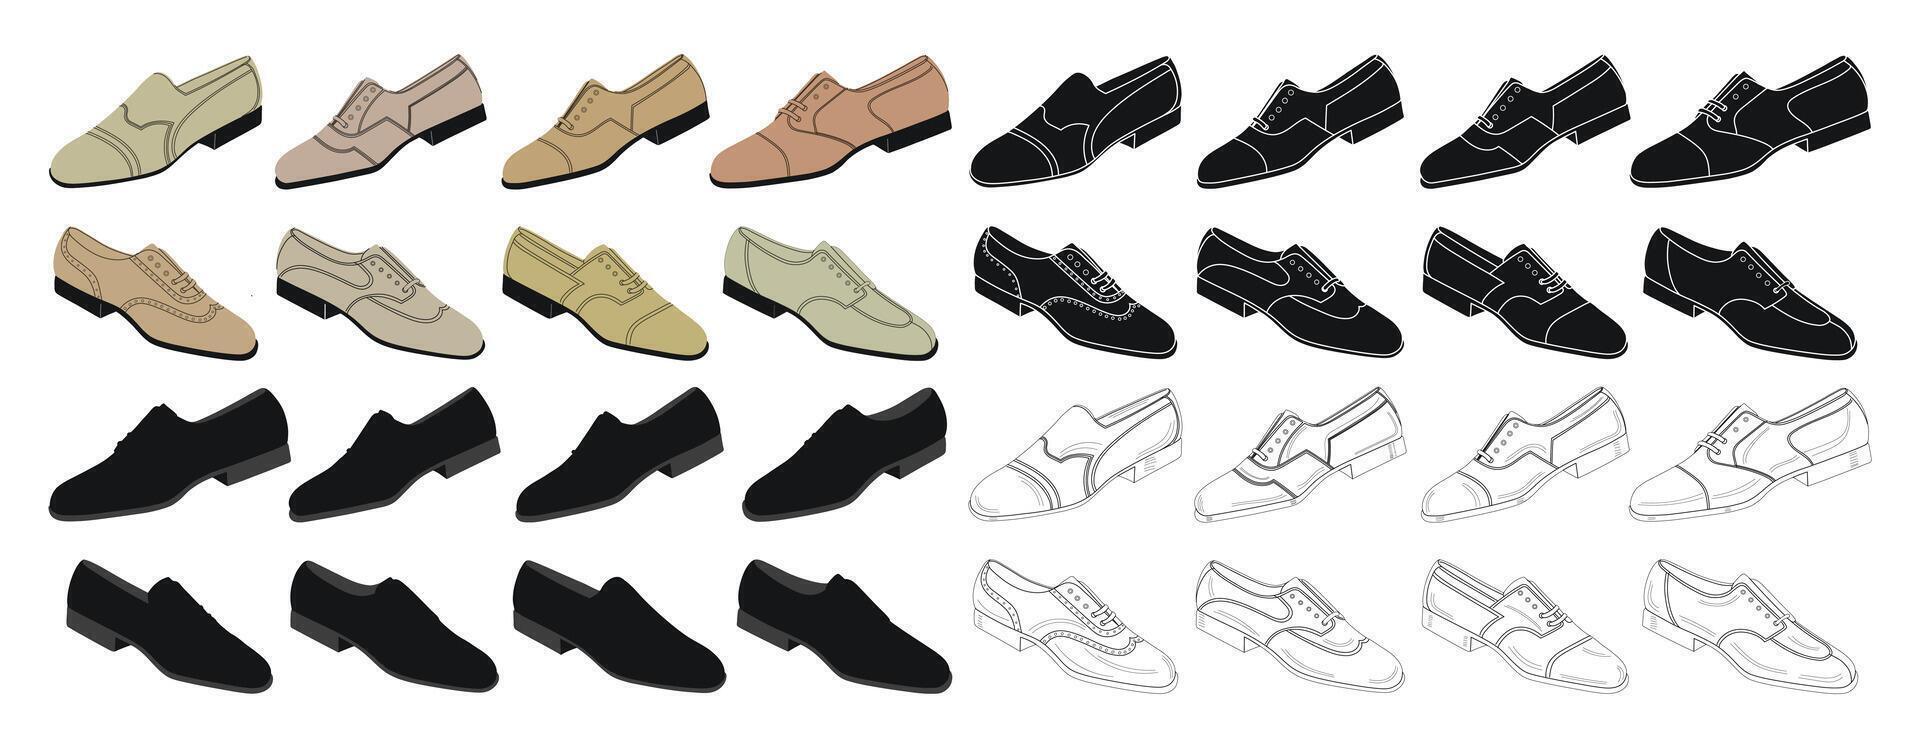 samling av klassisk låg skor för män, killar, Pojkar, isolerat vektor